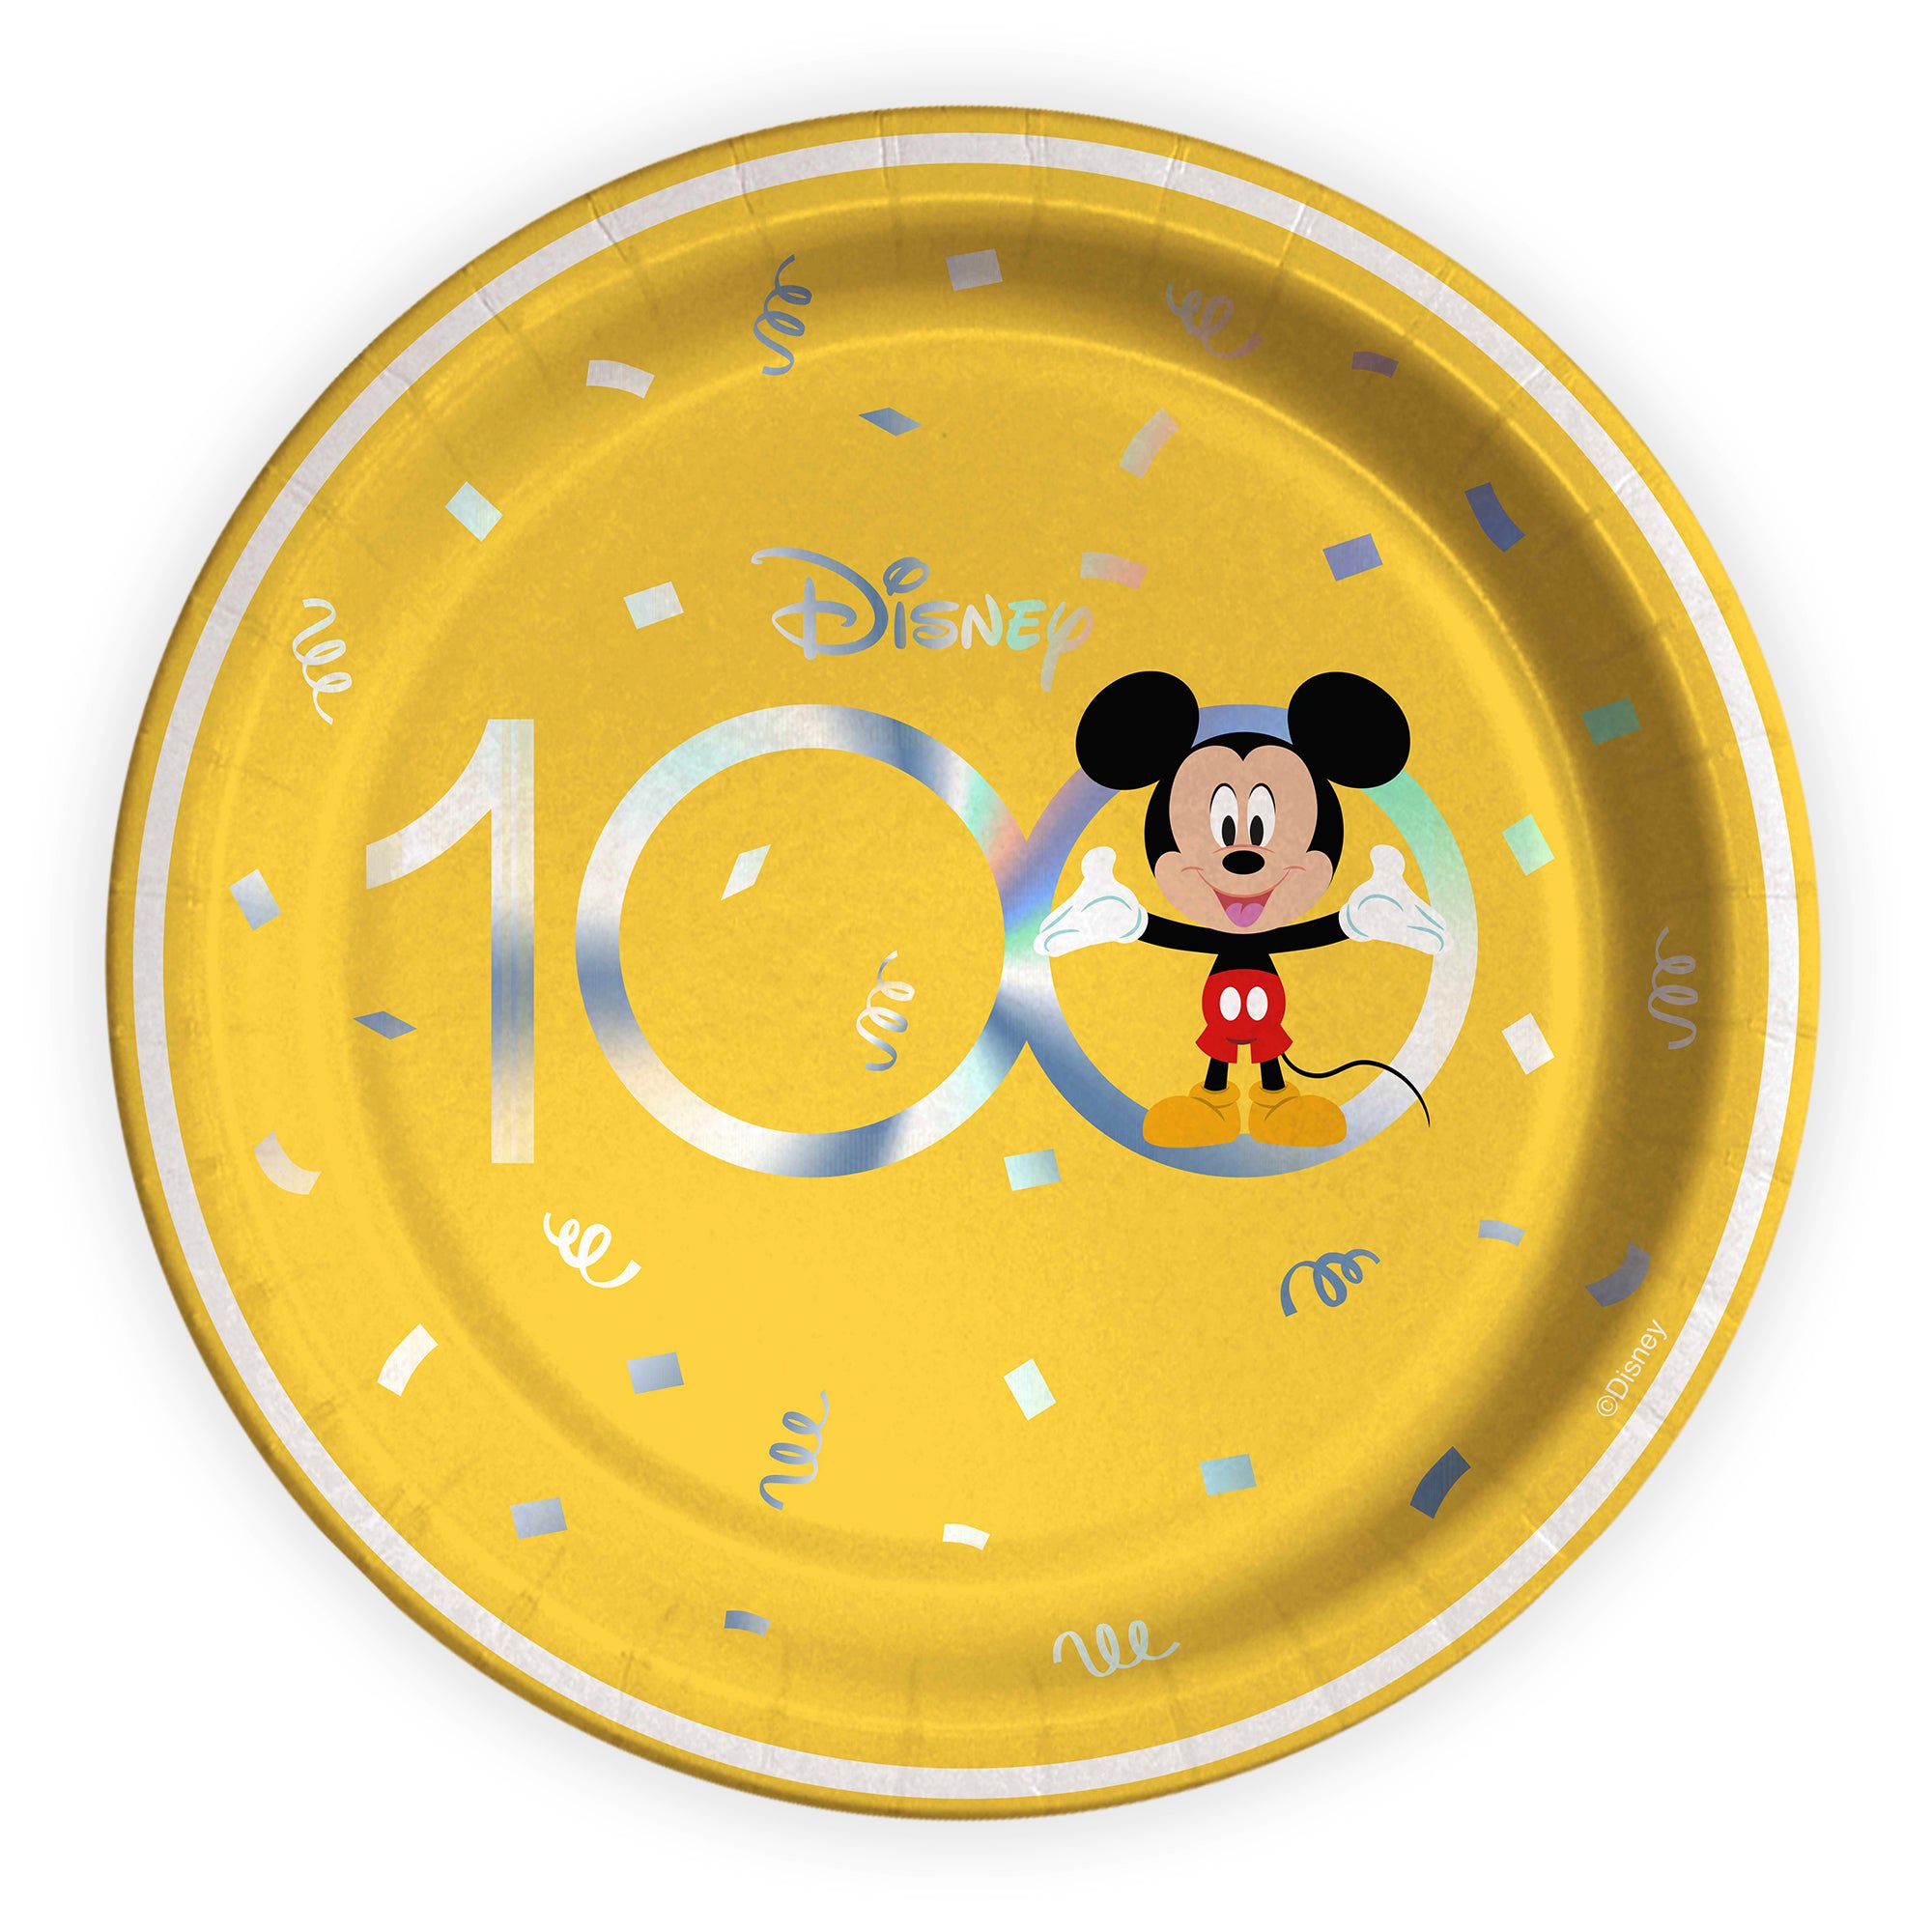 Cute Celebration D100 Mickey & Minnie Plates 9in, 8pcs